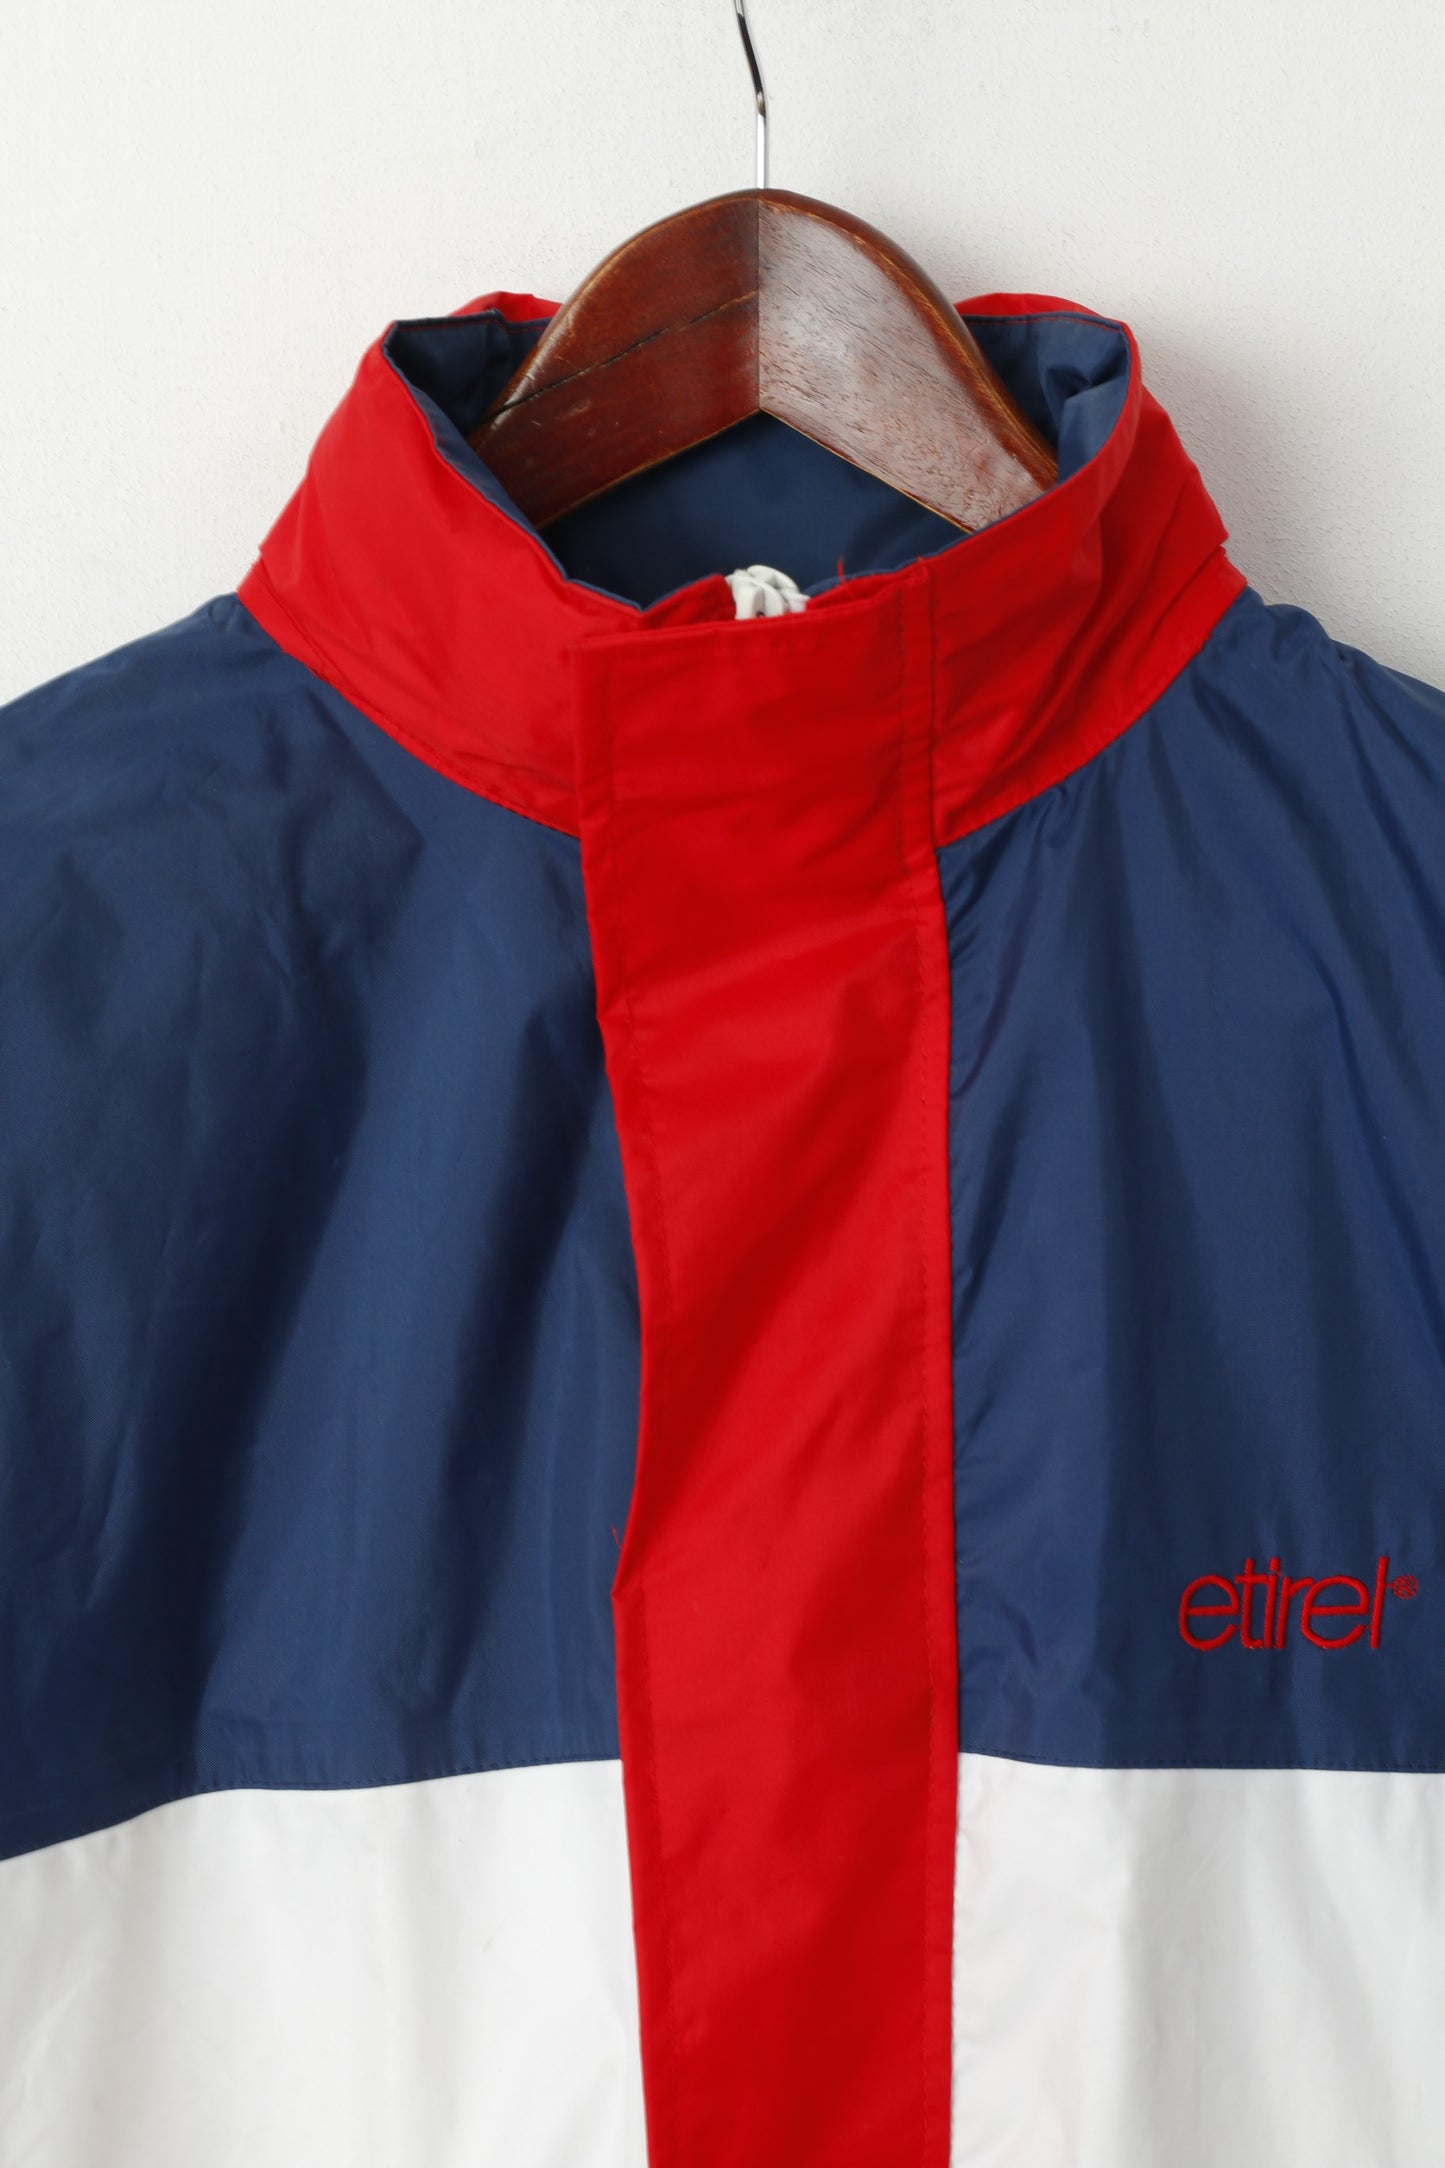 Etirel le Sportif Youth 164 Jacket Navy Red Nylon PVC Waterproof Hidded Hood Top